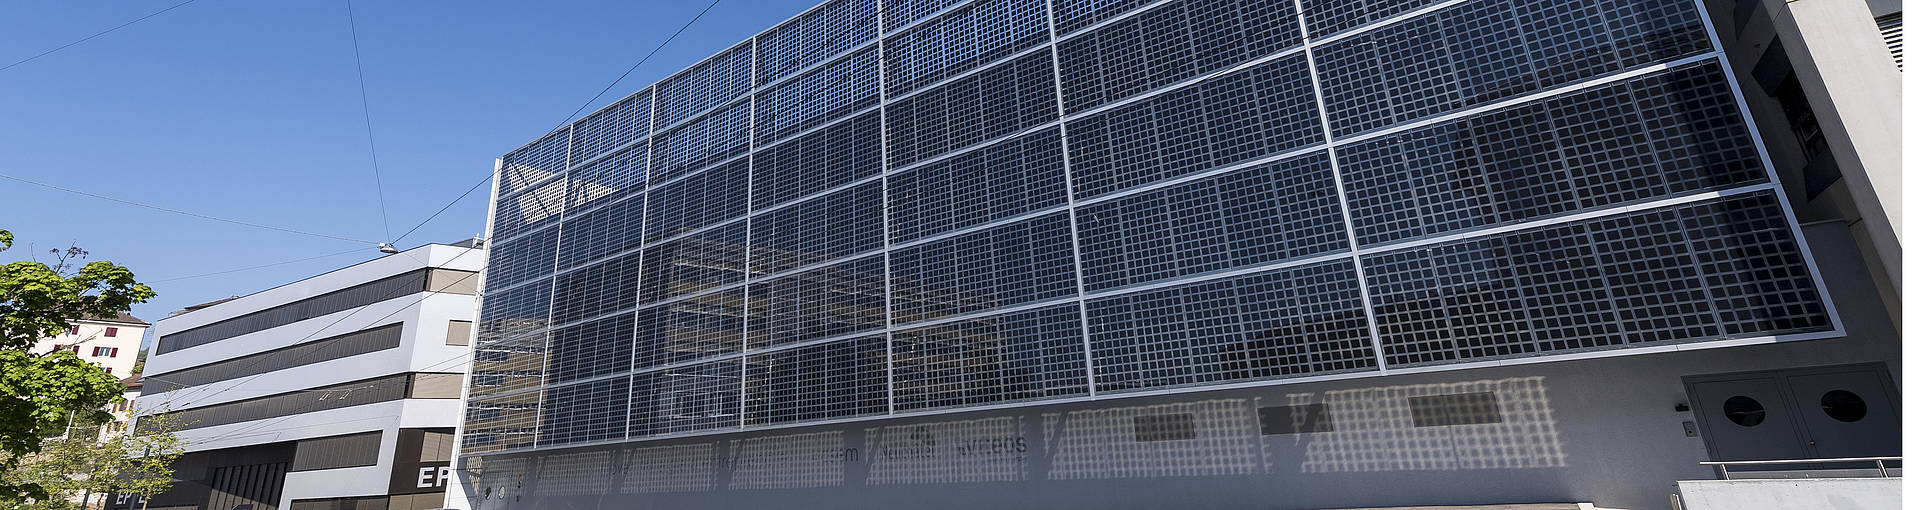 Une vue de Microcity et de la façade photovoltaïque du CSEM.